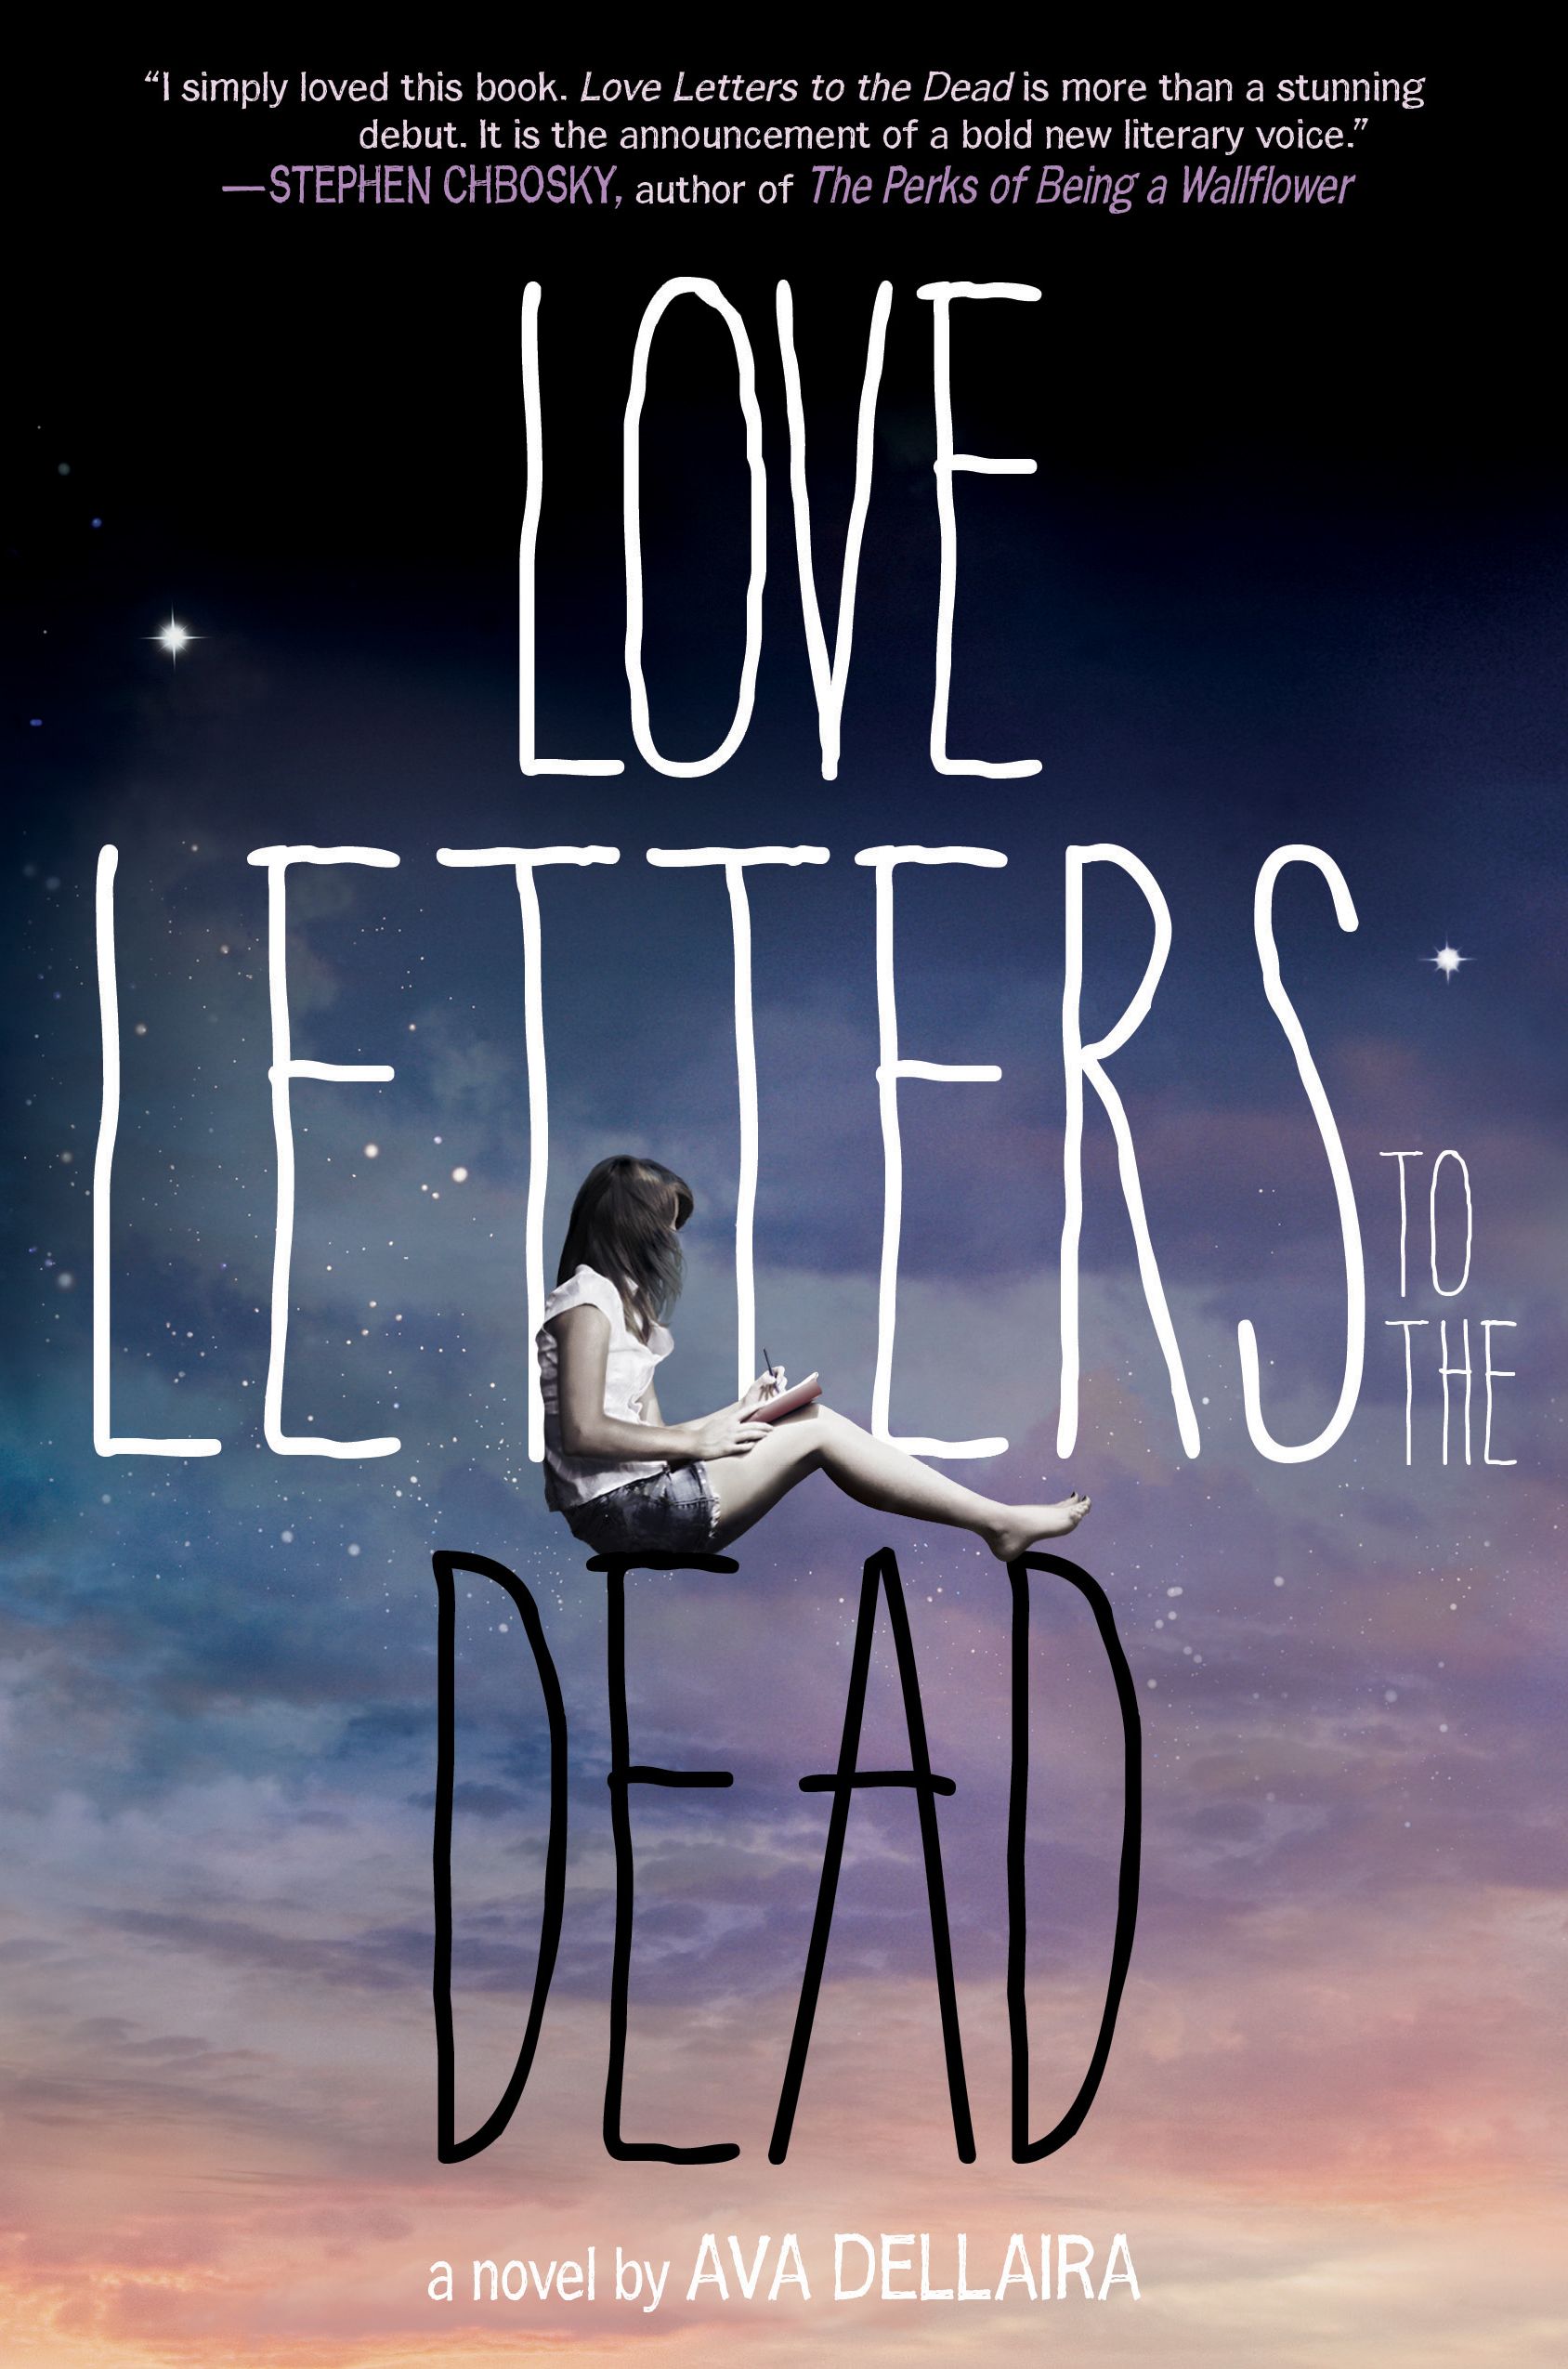 Love Letters to the Dead (La Vie, la mort, l'amour)